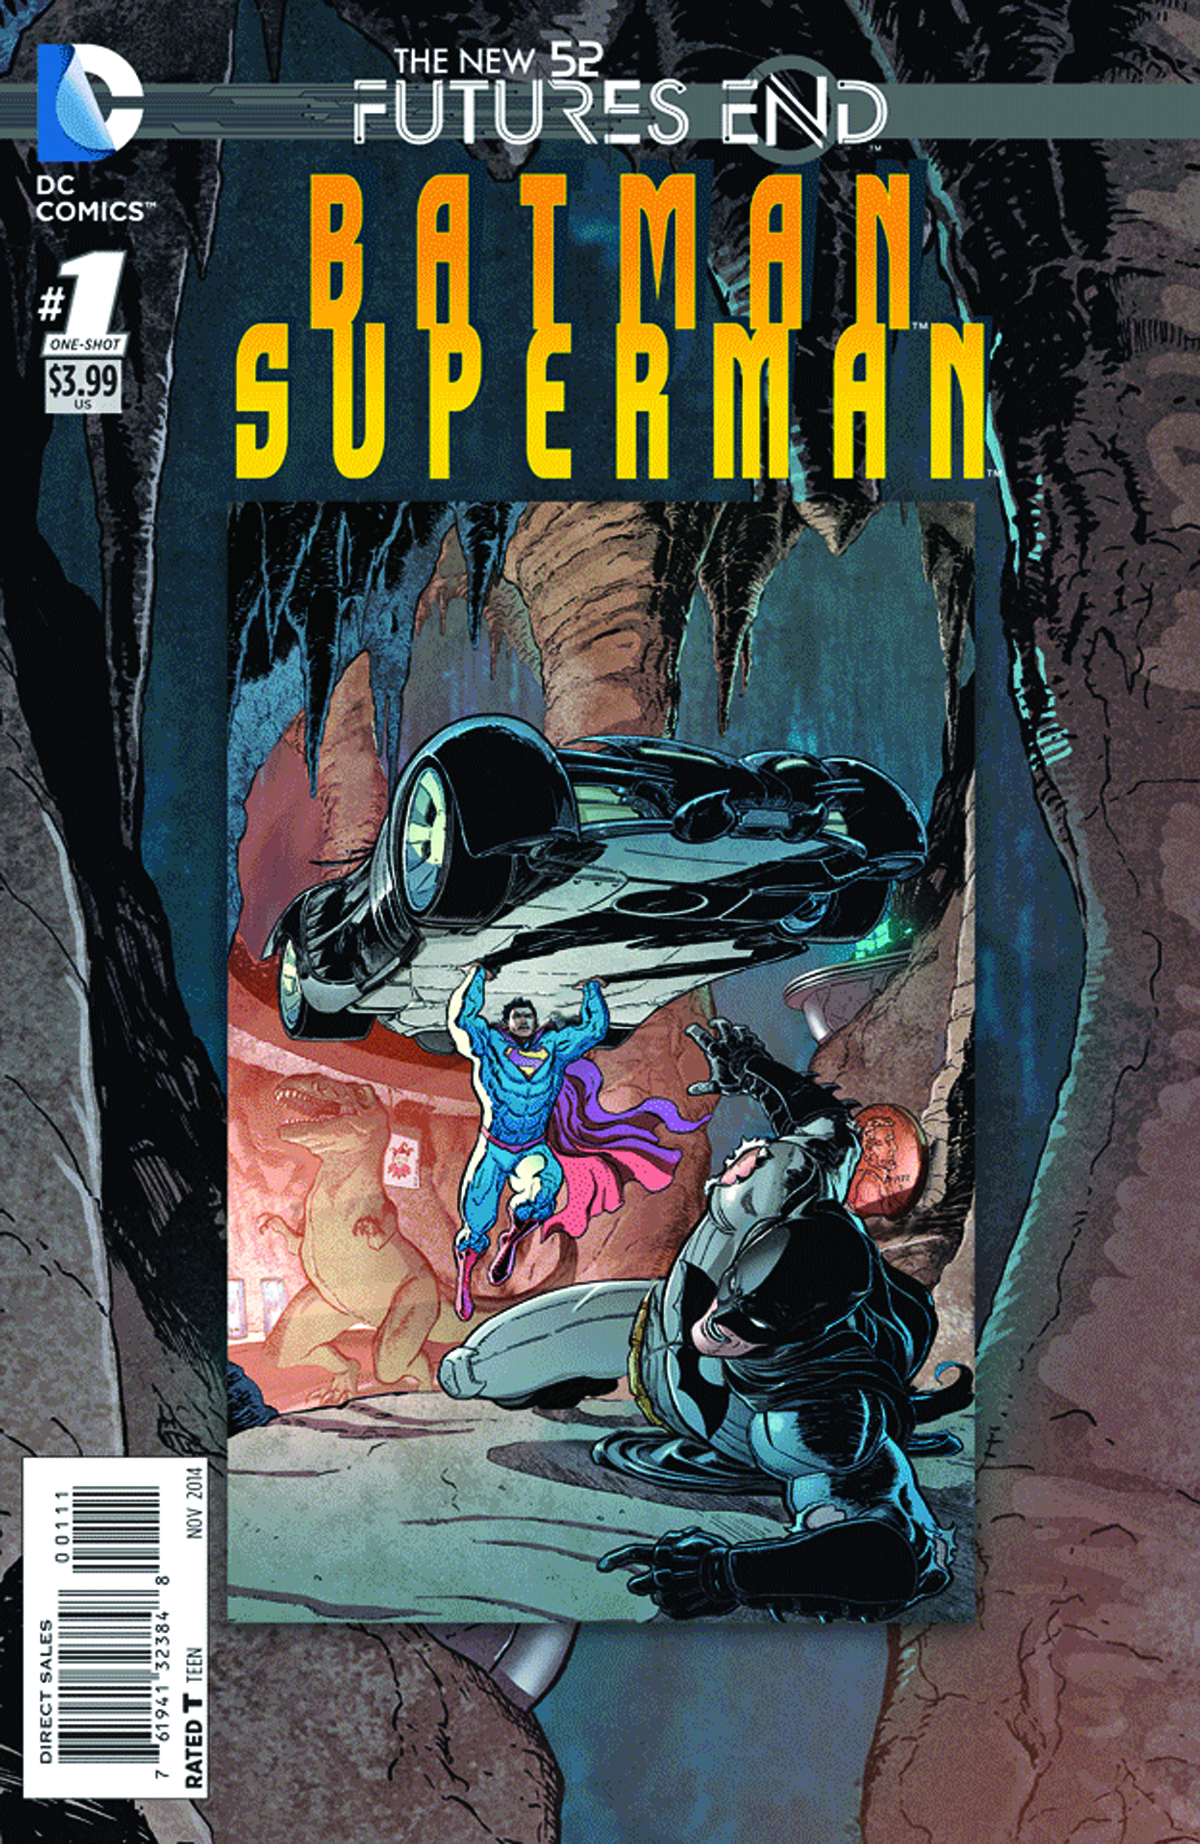 BATMAN SUPERMAN FUTURES END #1